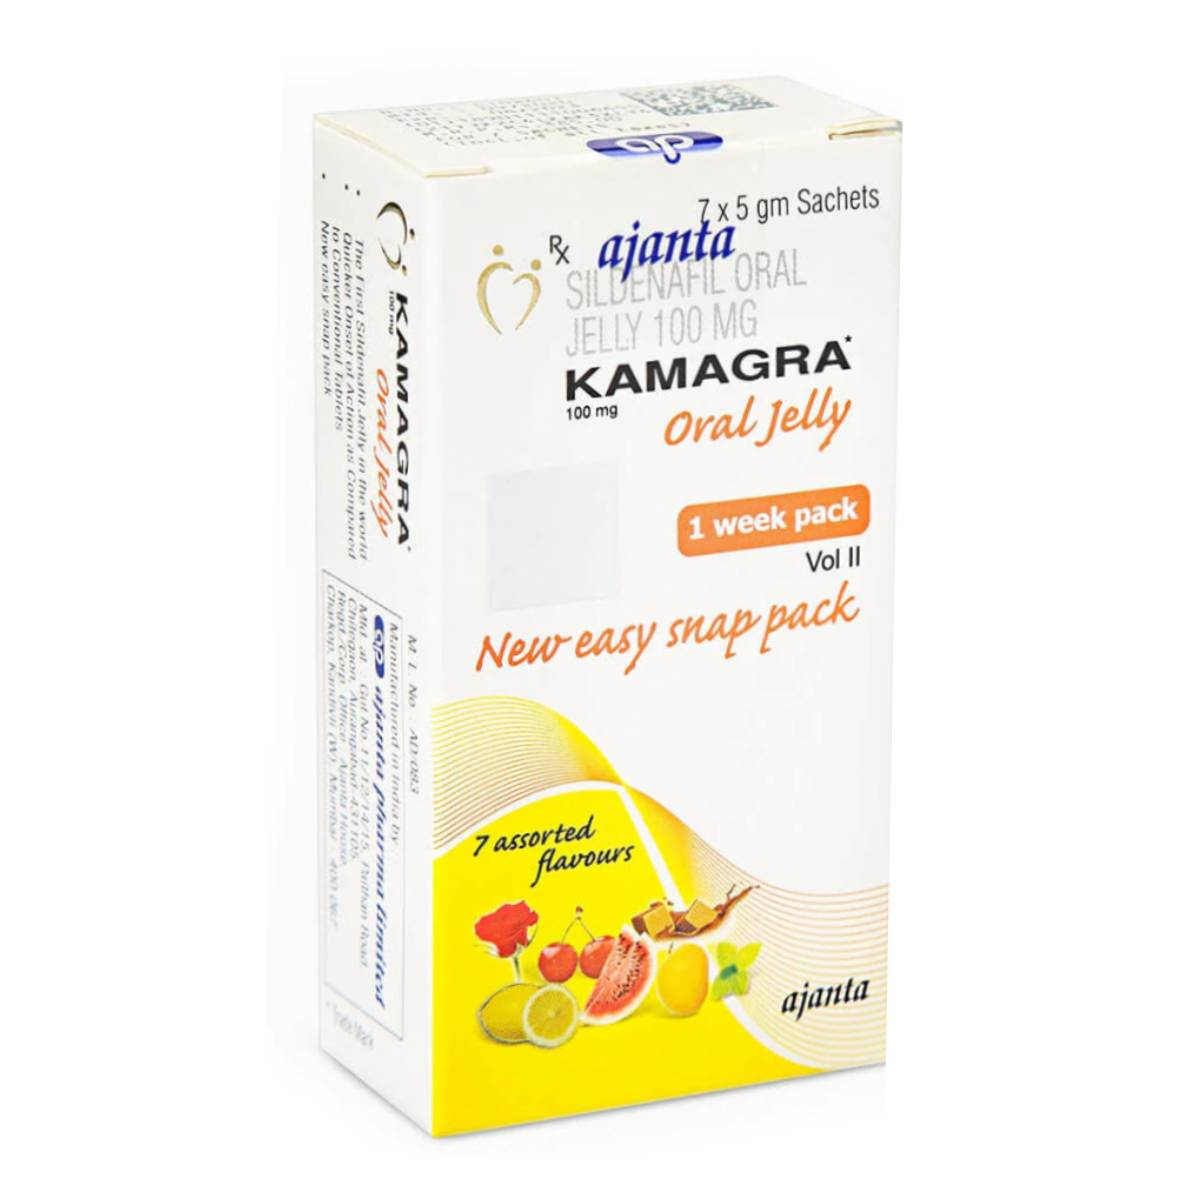 Kamagra oral jelly 100mg Vol II